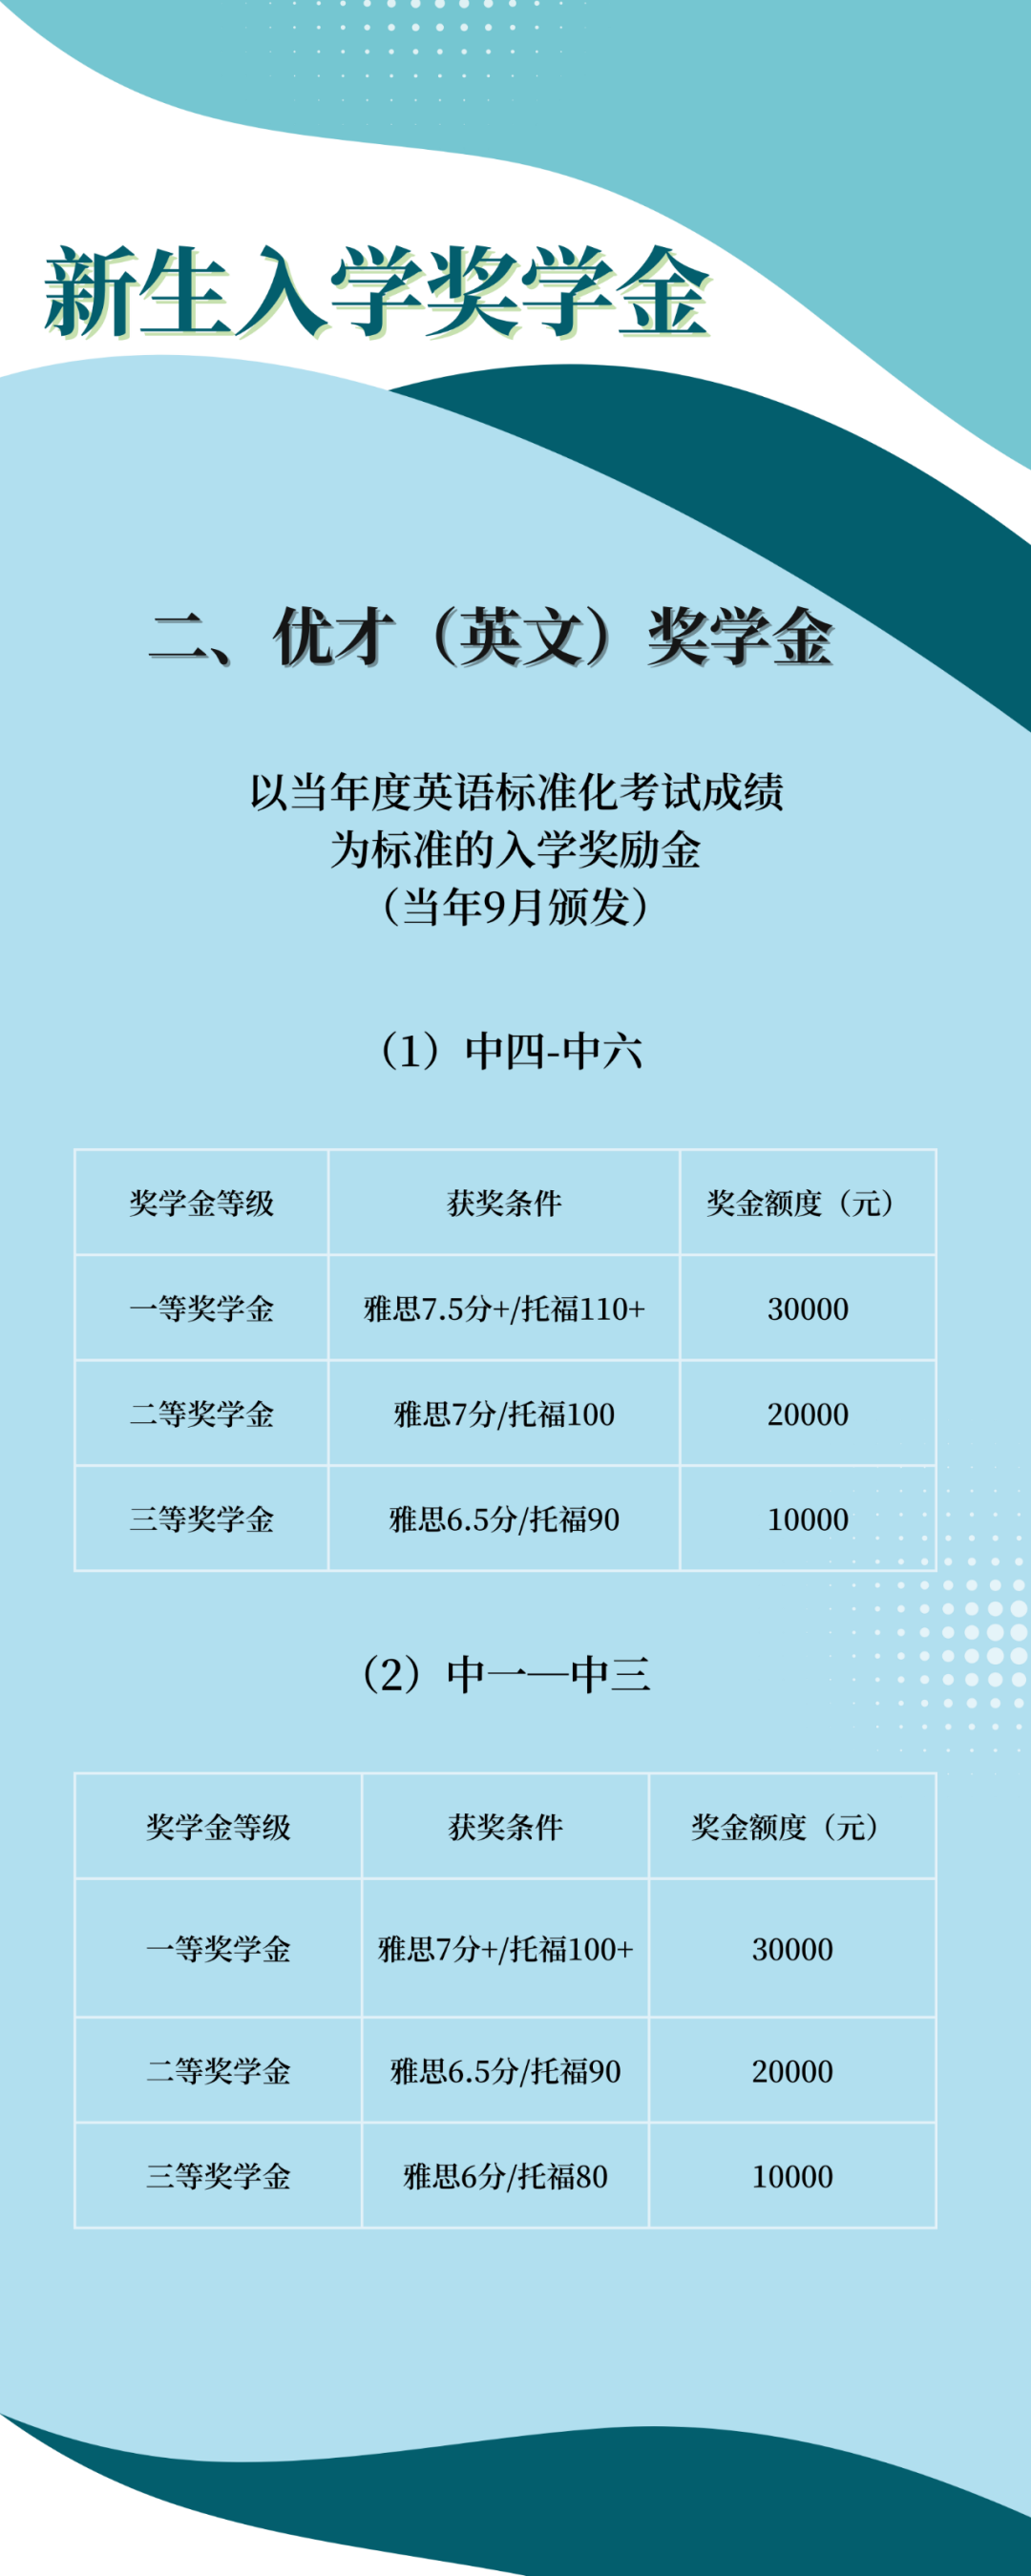 新生入学奖学金 | 广州暨大港澳子弟学校2023-2024“卓越”奖学金计划正式公布